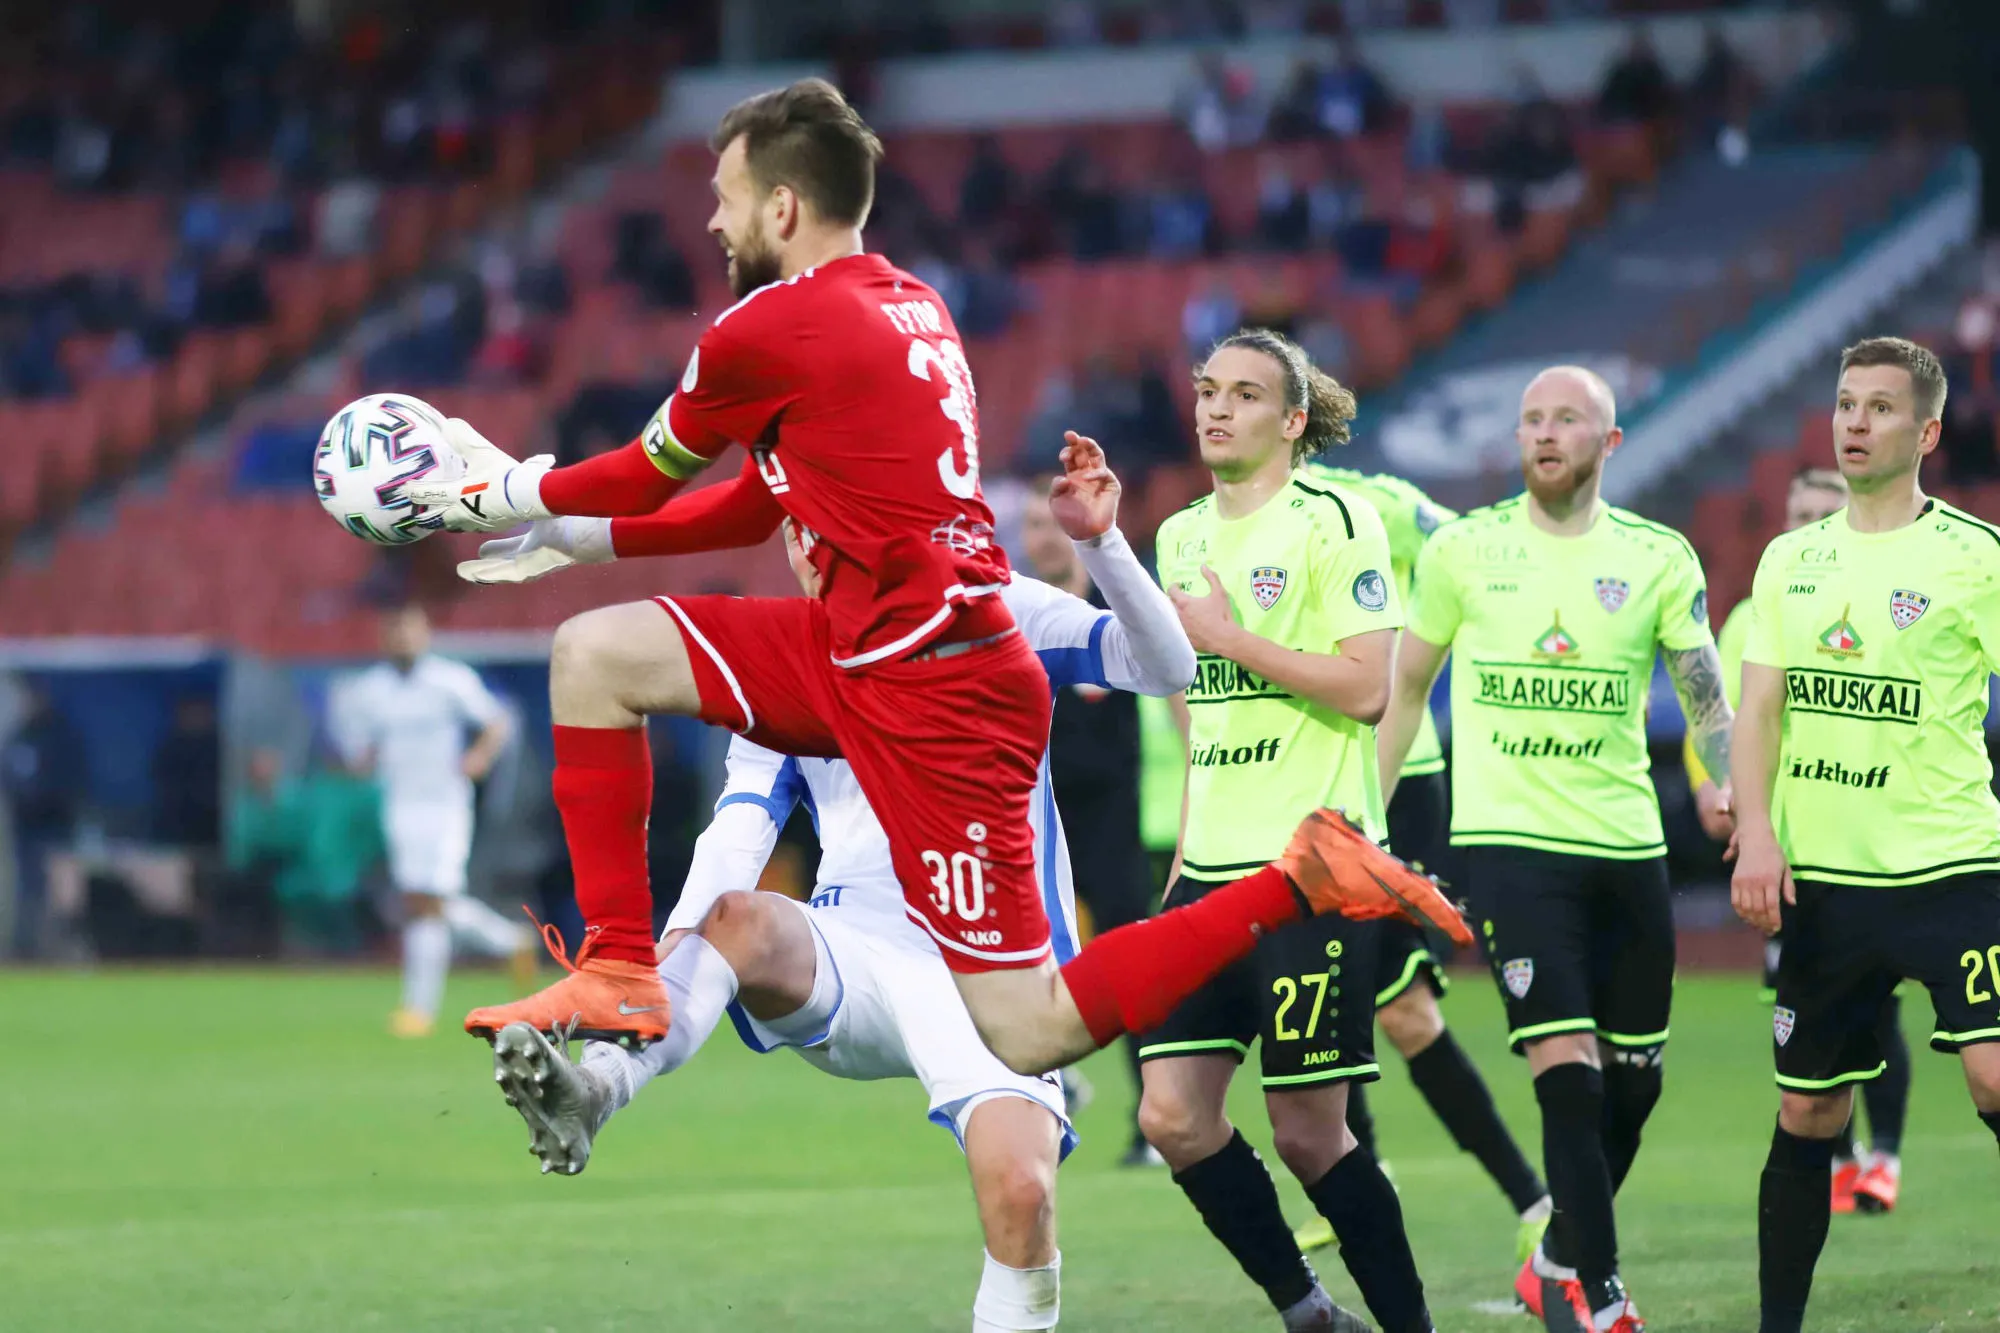 Pronostic Vitebsk Shakhtyor Soligorsk : Analyse, prono et cotes du match de Vysshaya Liga Belarus